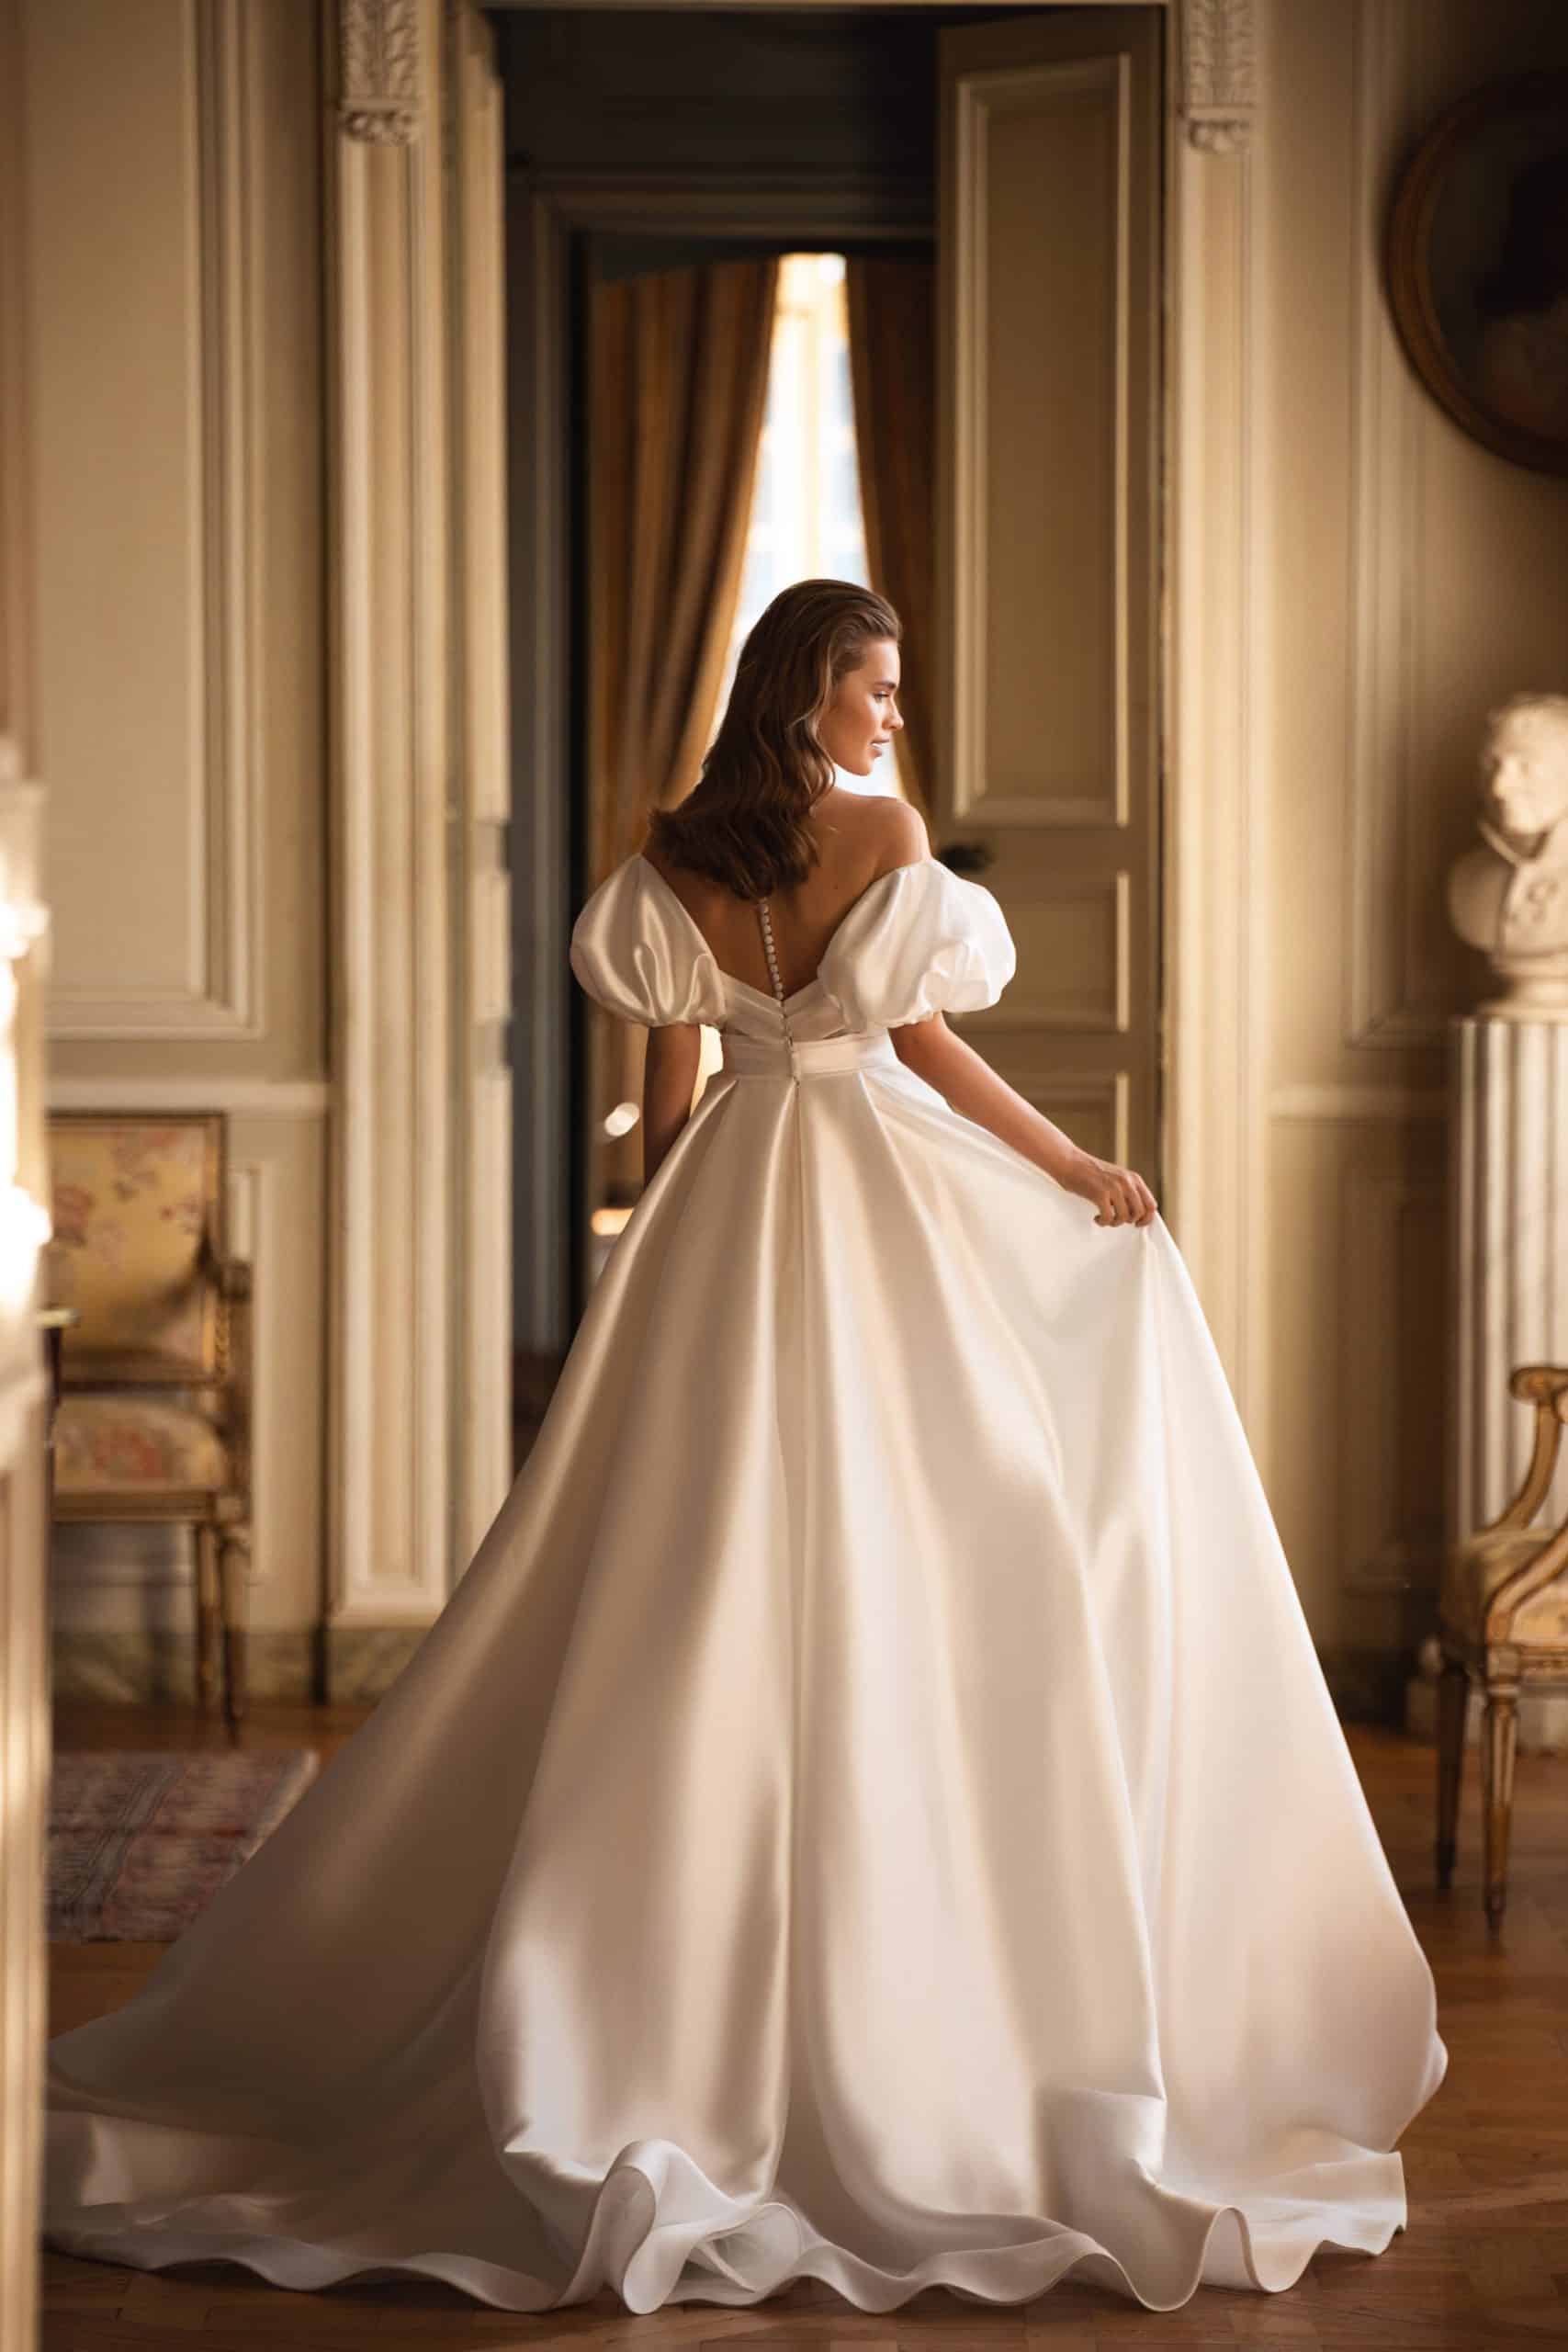 Bild von hinten: schlichtes / elegantes Brautkleid mit Puffärmeln und transparentem Rücken